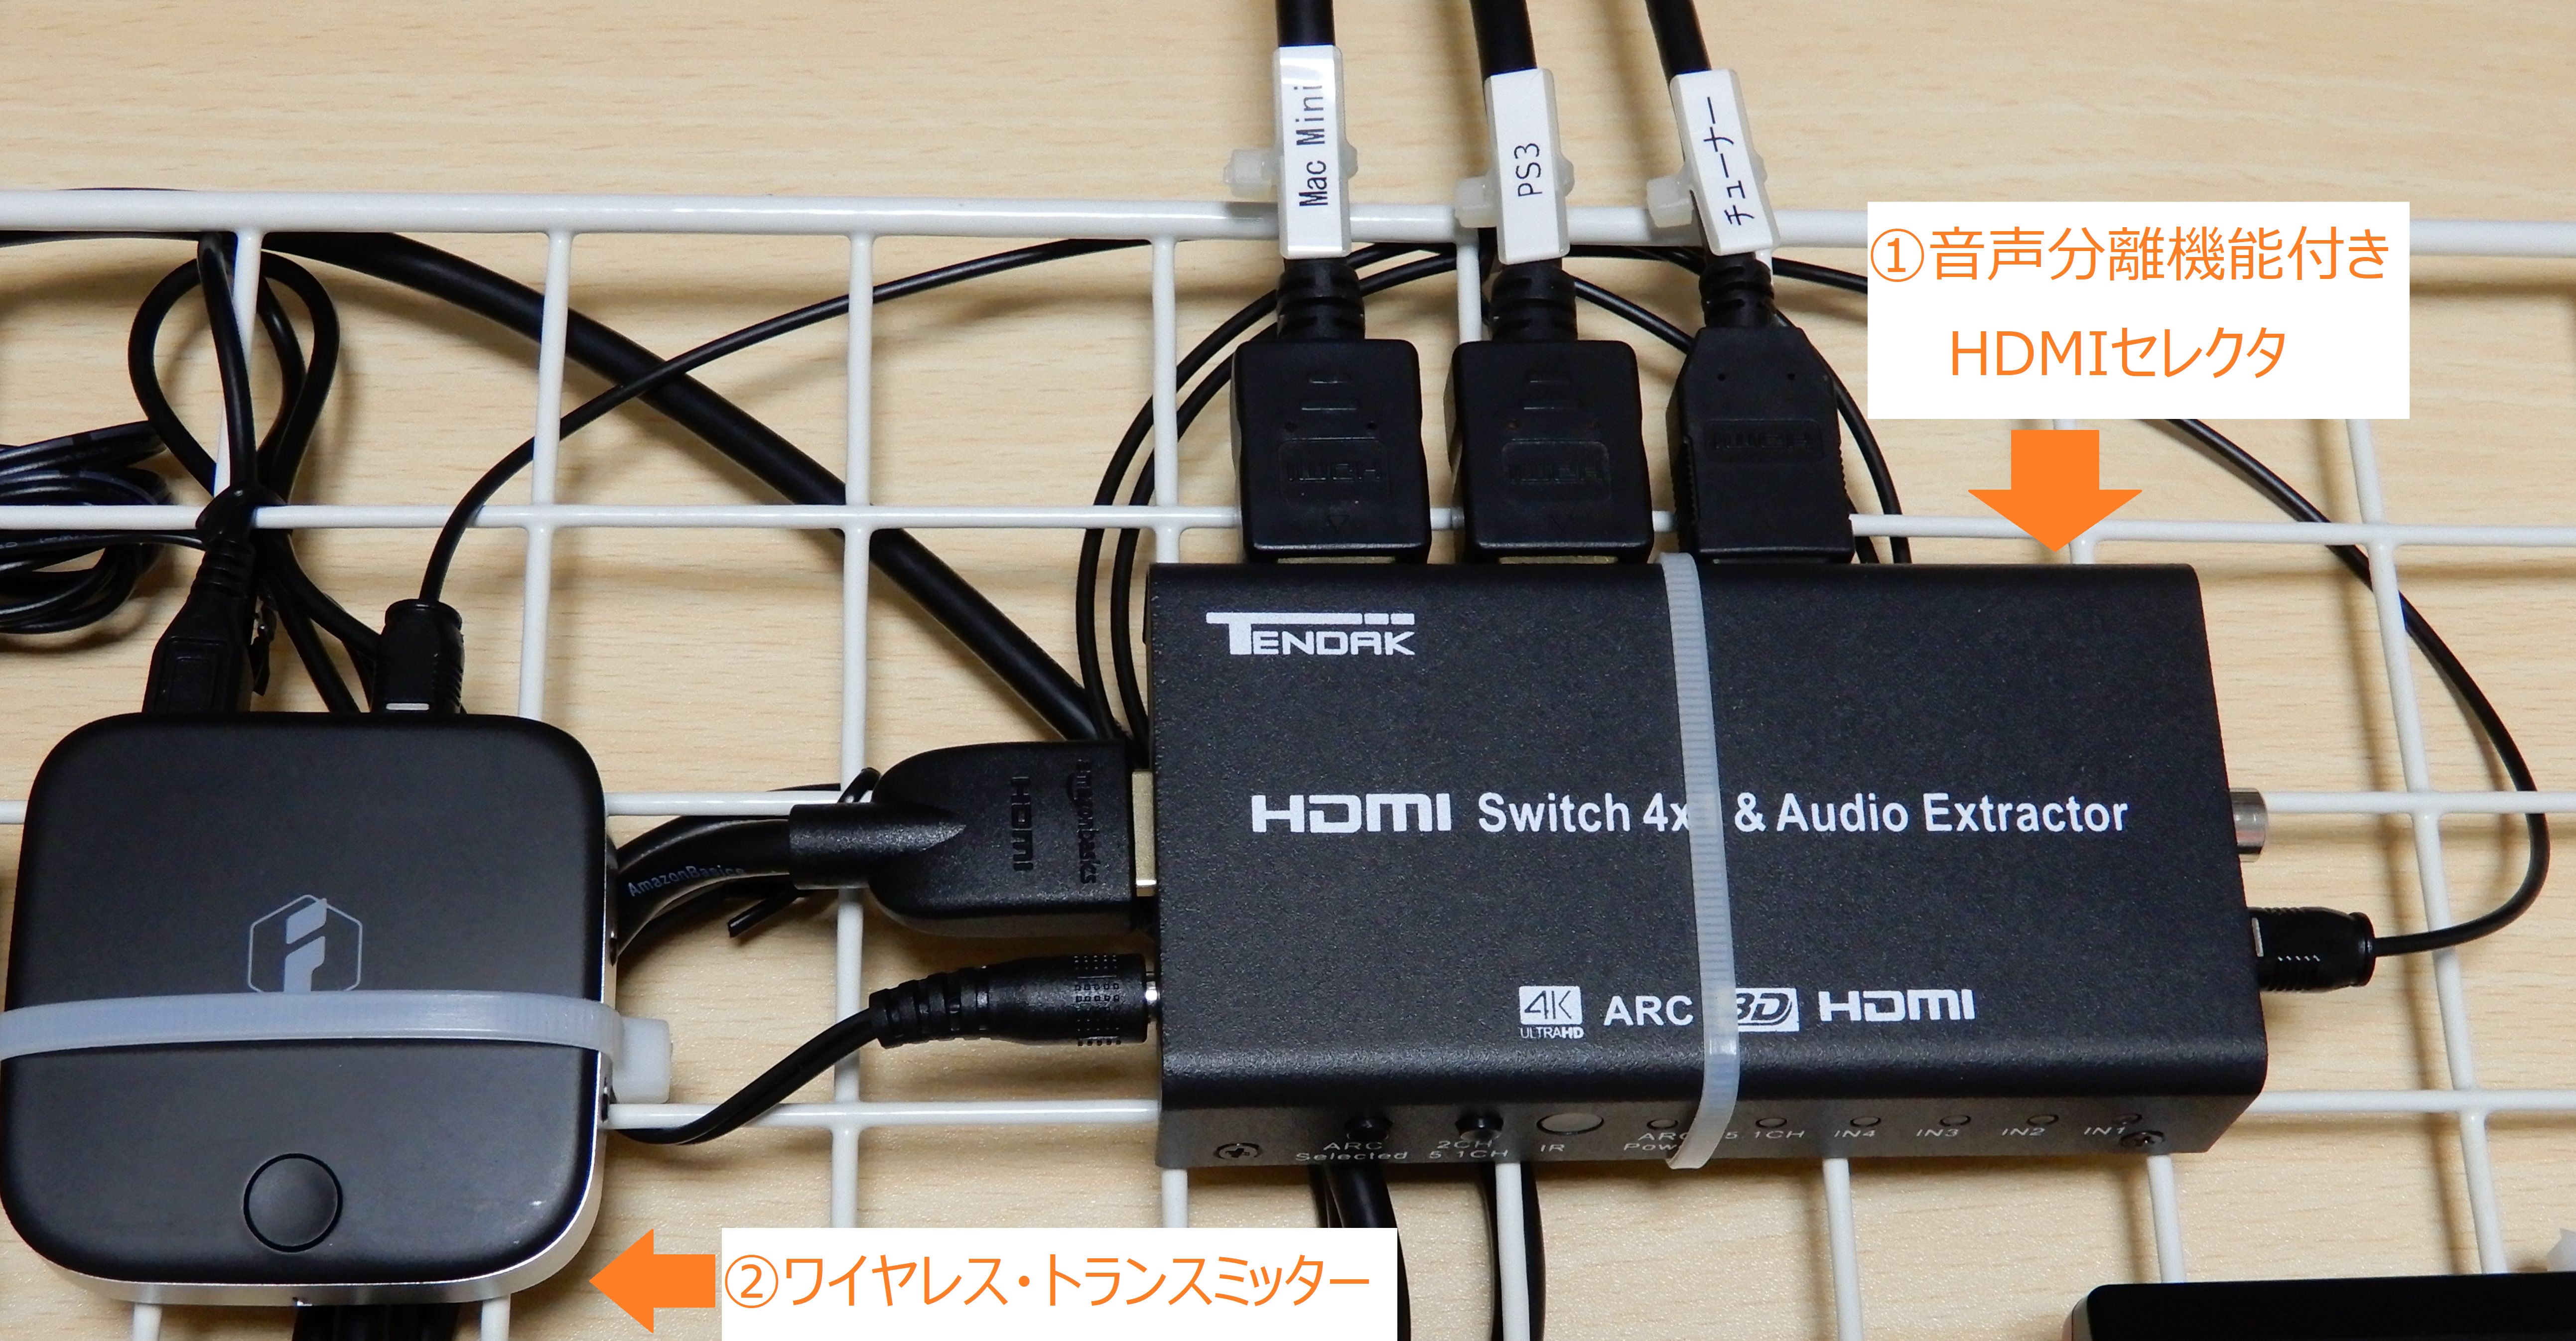 2694円 トップ HDMIで音声出力できる 4K HDR対応 音声分離 HDMI 切替器 4K60Hz対応 外部音声出力付 4入力1出力 セレクター RS-HDSW41A-4K 120Hz PS5 音声 分離 切替 光デジタル 同軸デジタル 出力 AAC5.1ch Dolby Atmos DTS:X リモコン付 切り替え